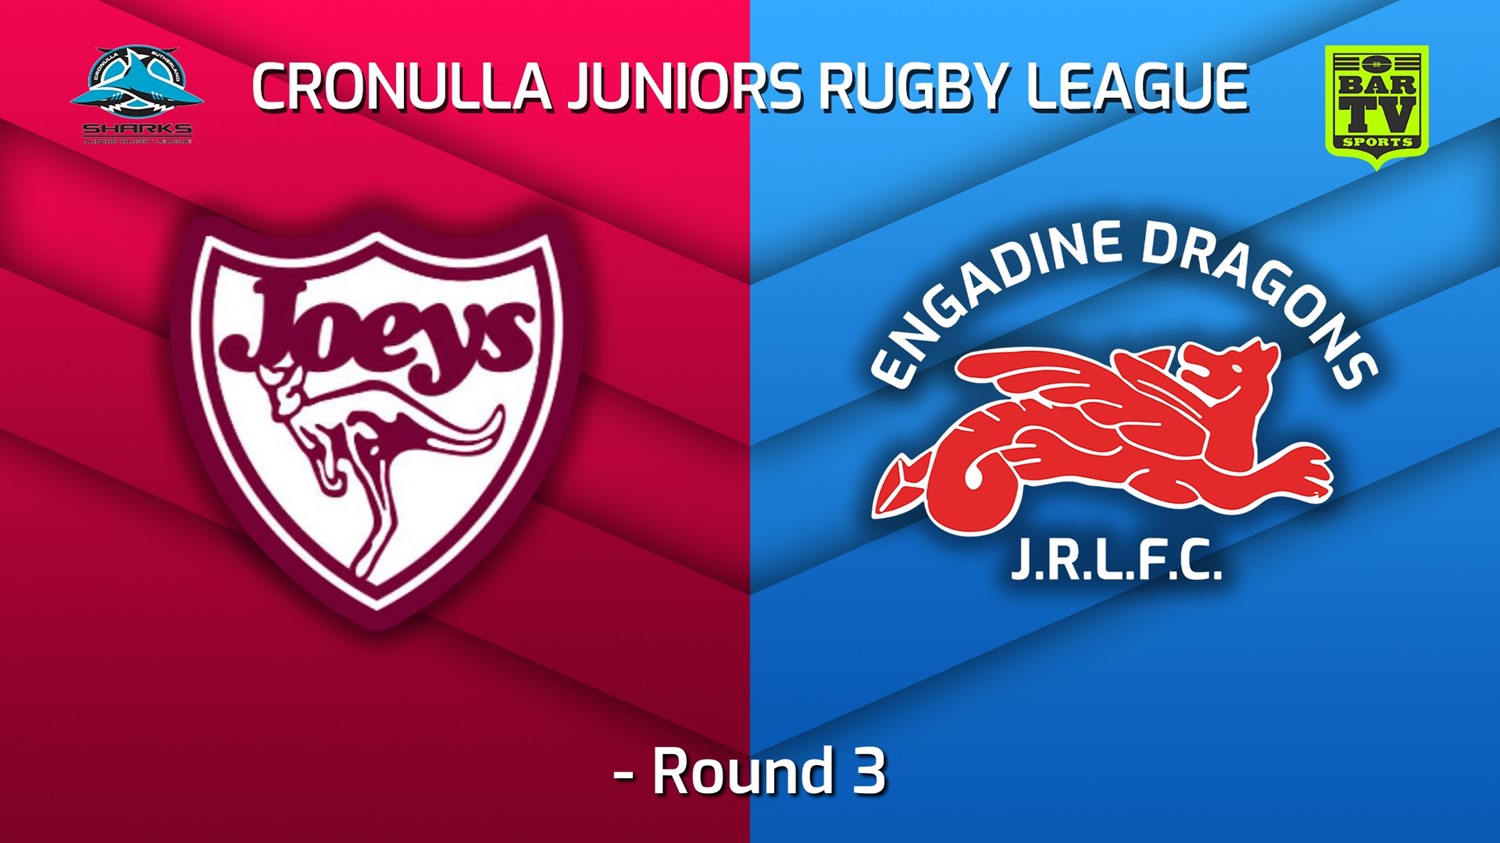 220514-Cronulla Juniors - u16 Round 3 - St Josephs v Engadine Dragons Slate Image